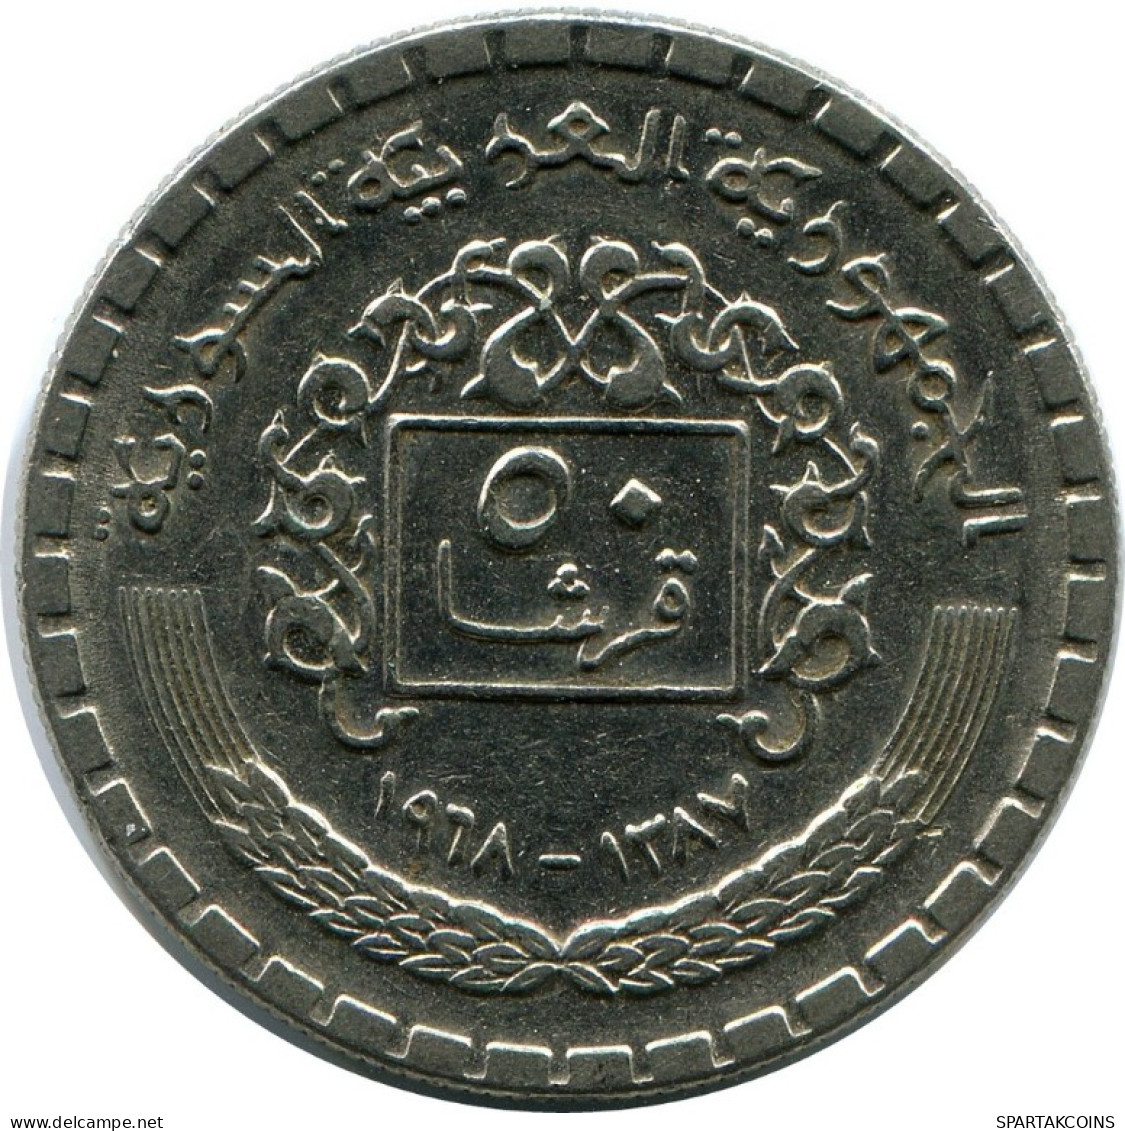 50 QIRSH 1968 SYRIA Islamic Coin #AK291.U.A - Syrien